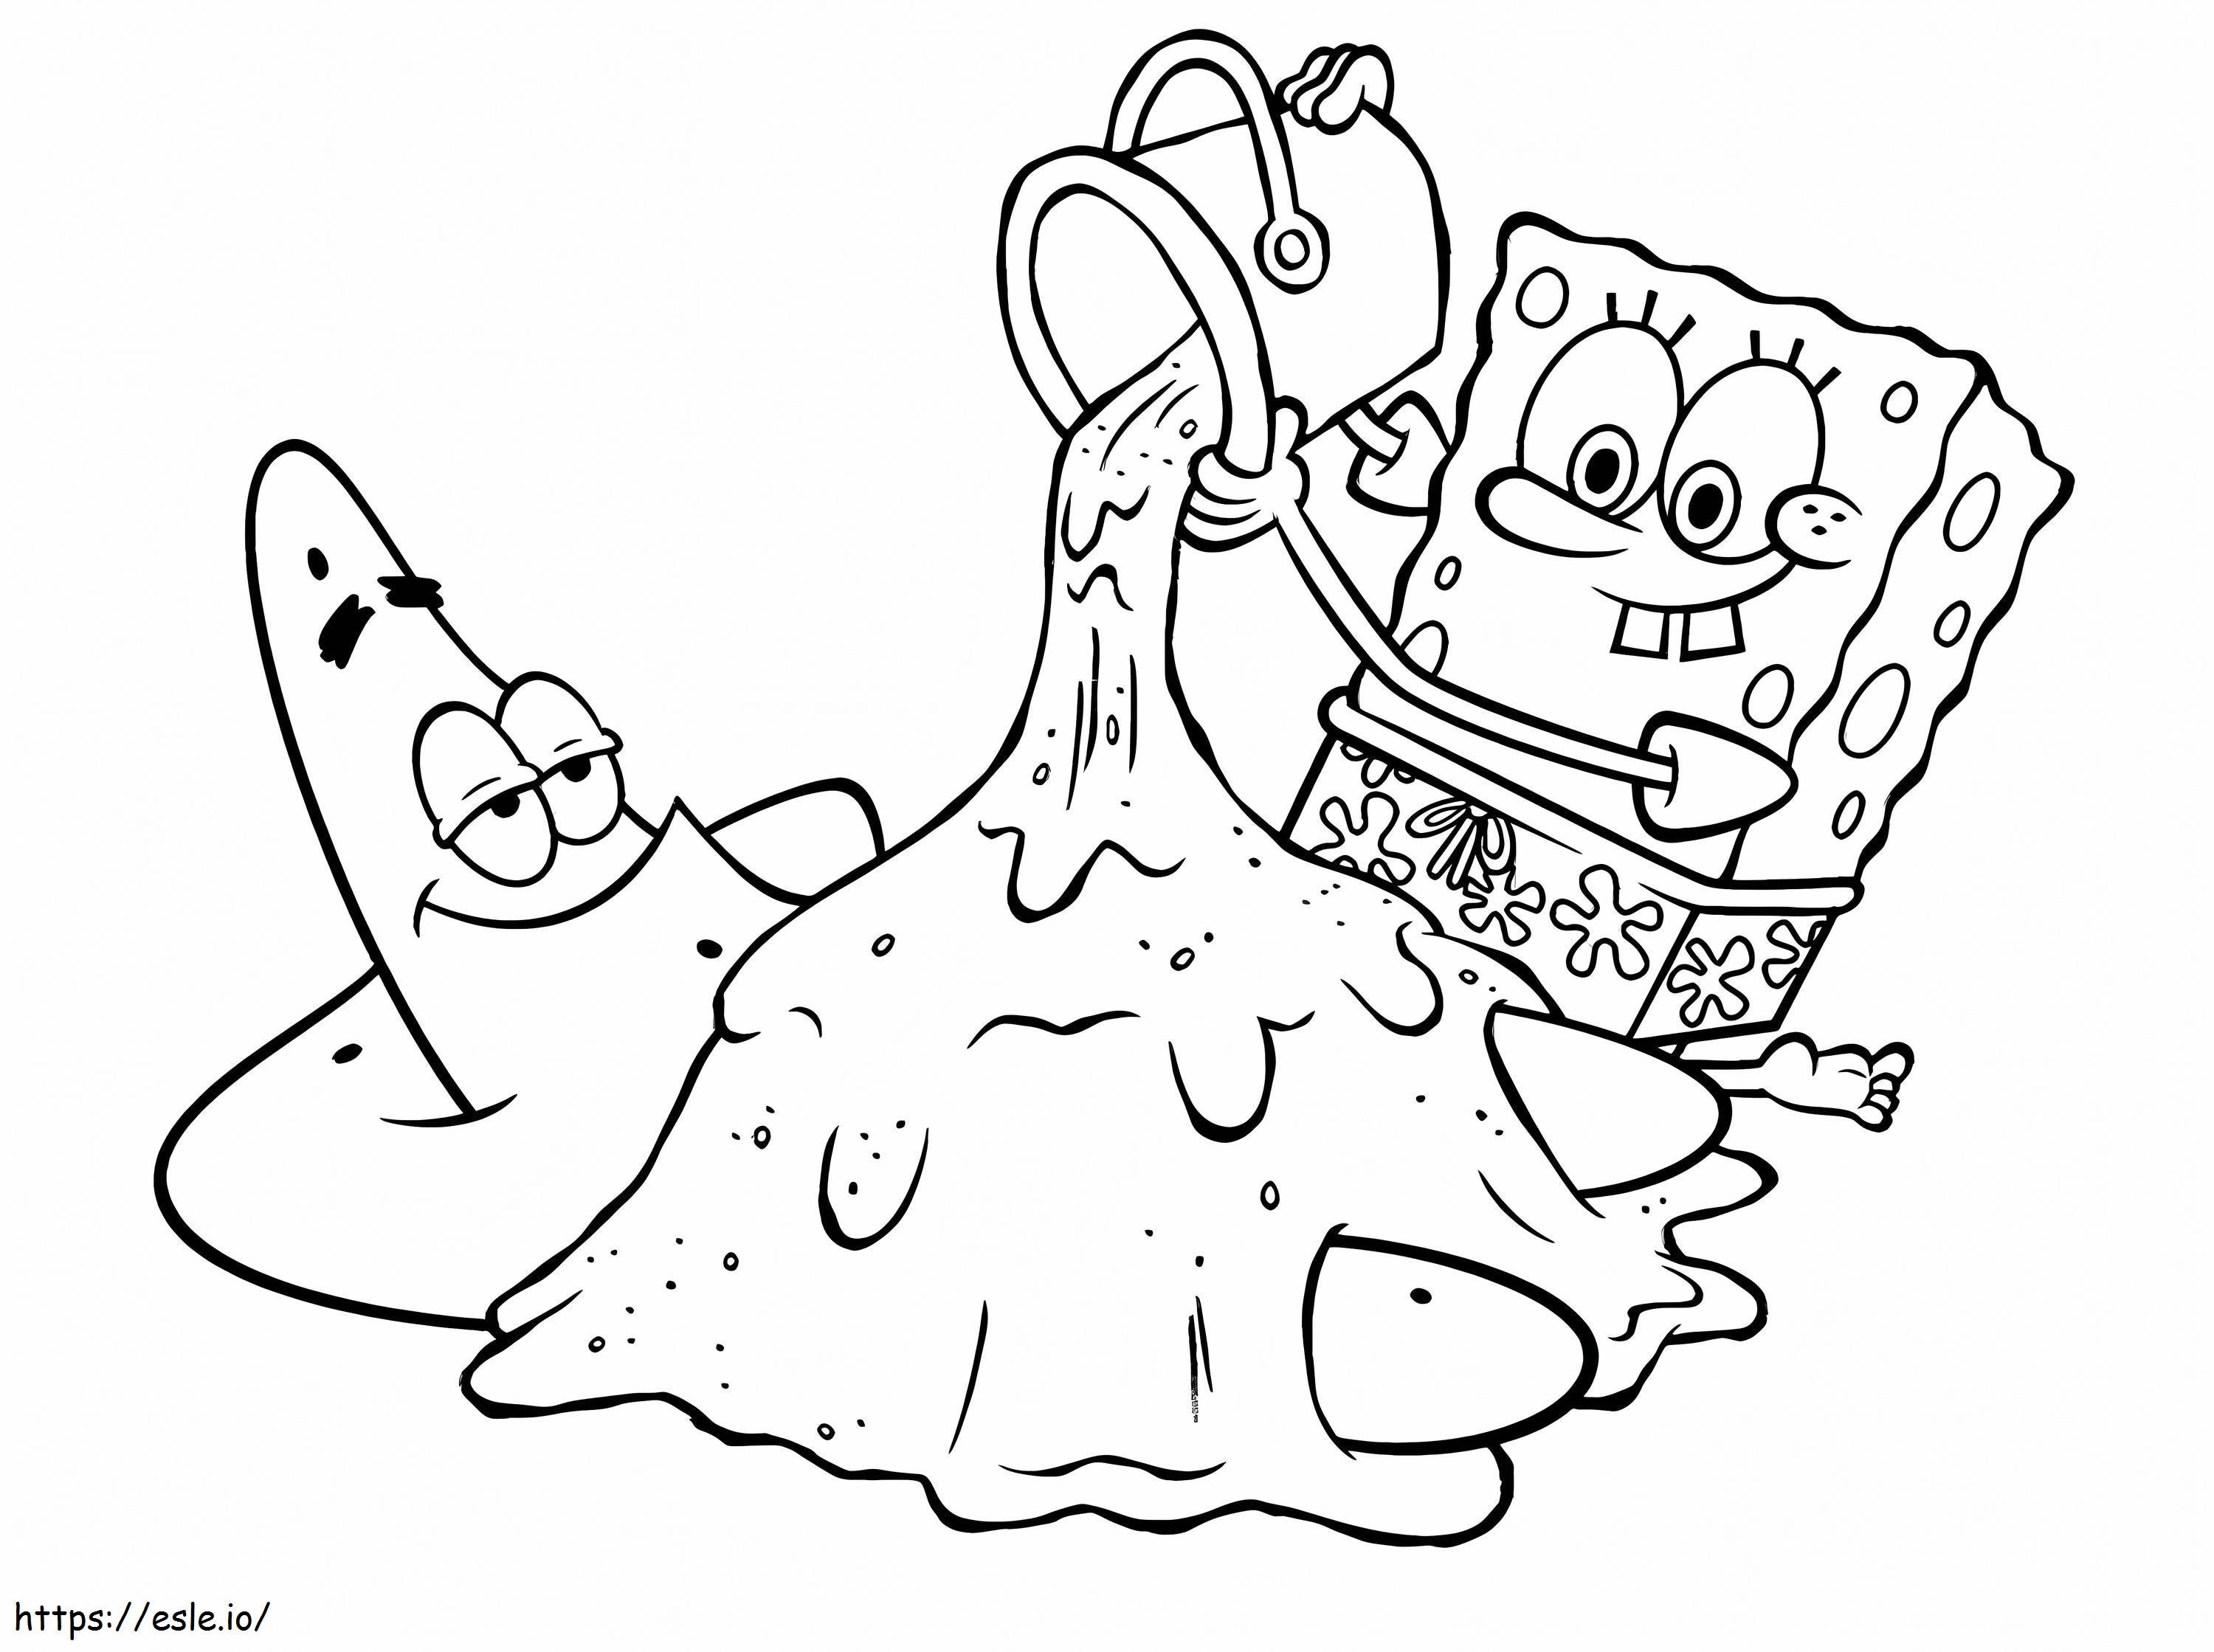 Spongebob i Patryk zabawni kolorowanka